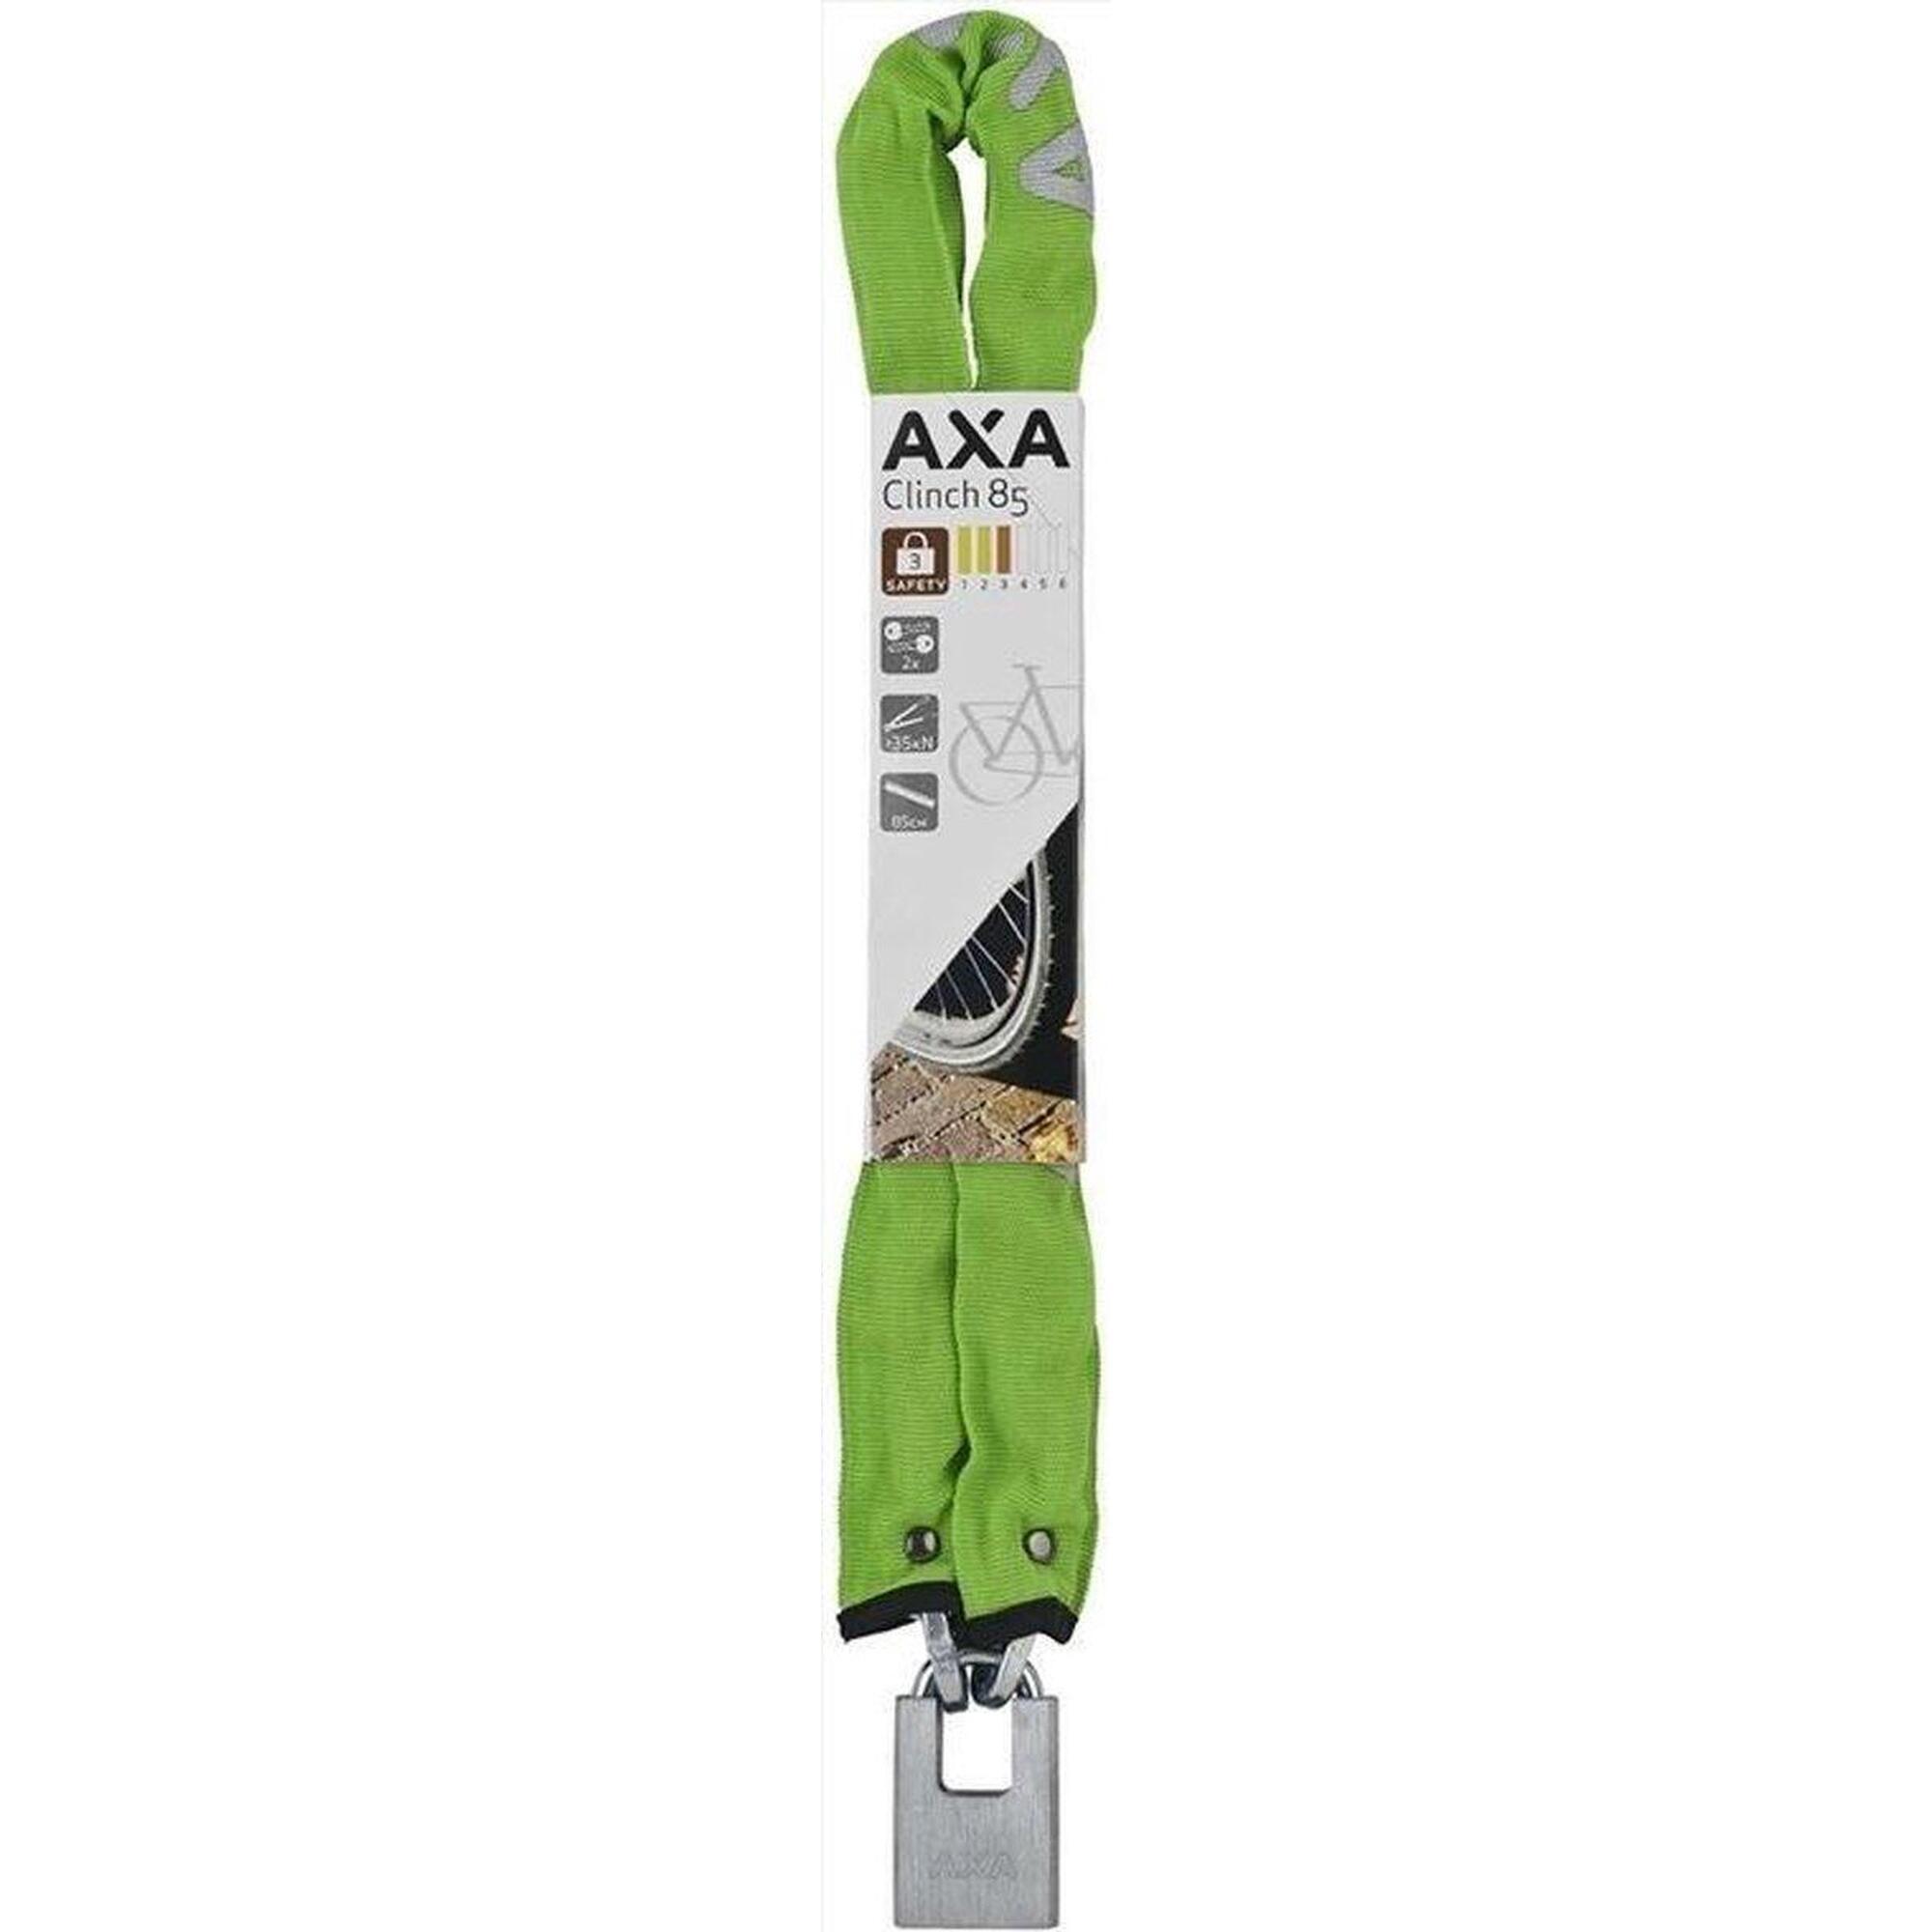 AXA Bloccacatena Clinch Plus CH85, lunghezza 85 cm, spessore 6,0 mm, verde